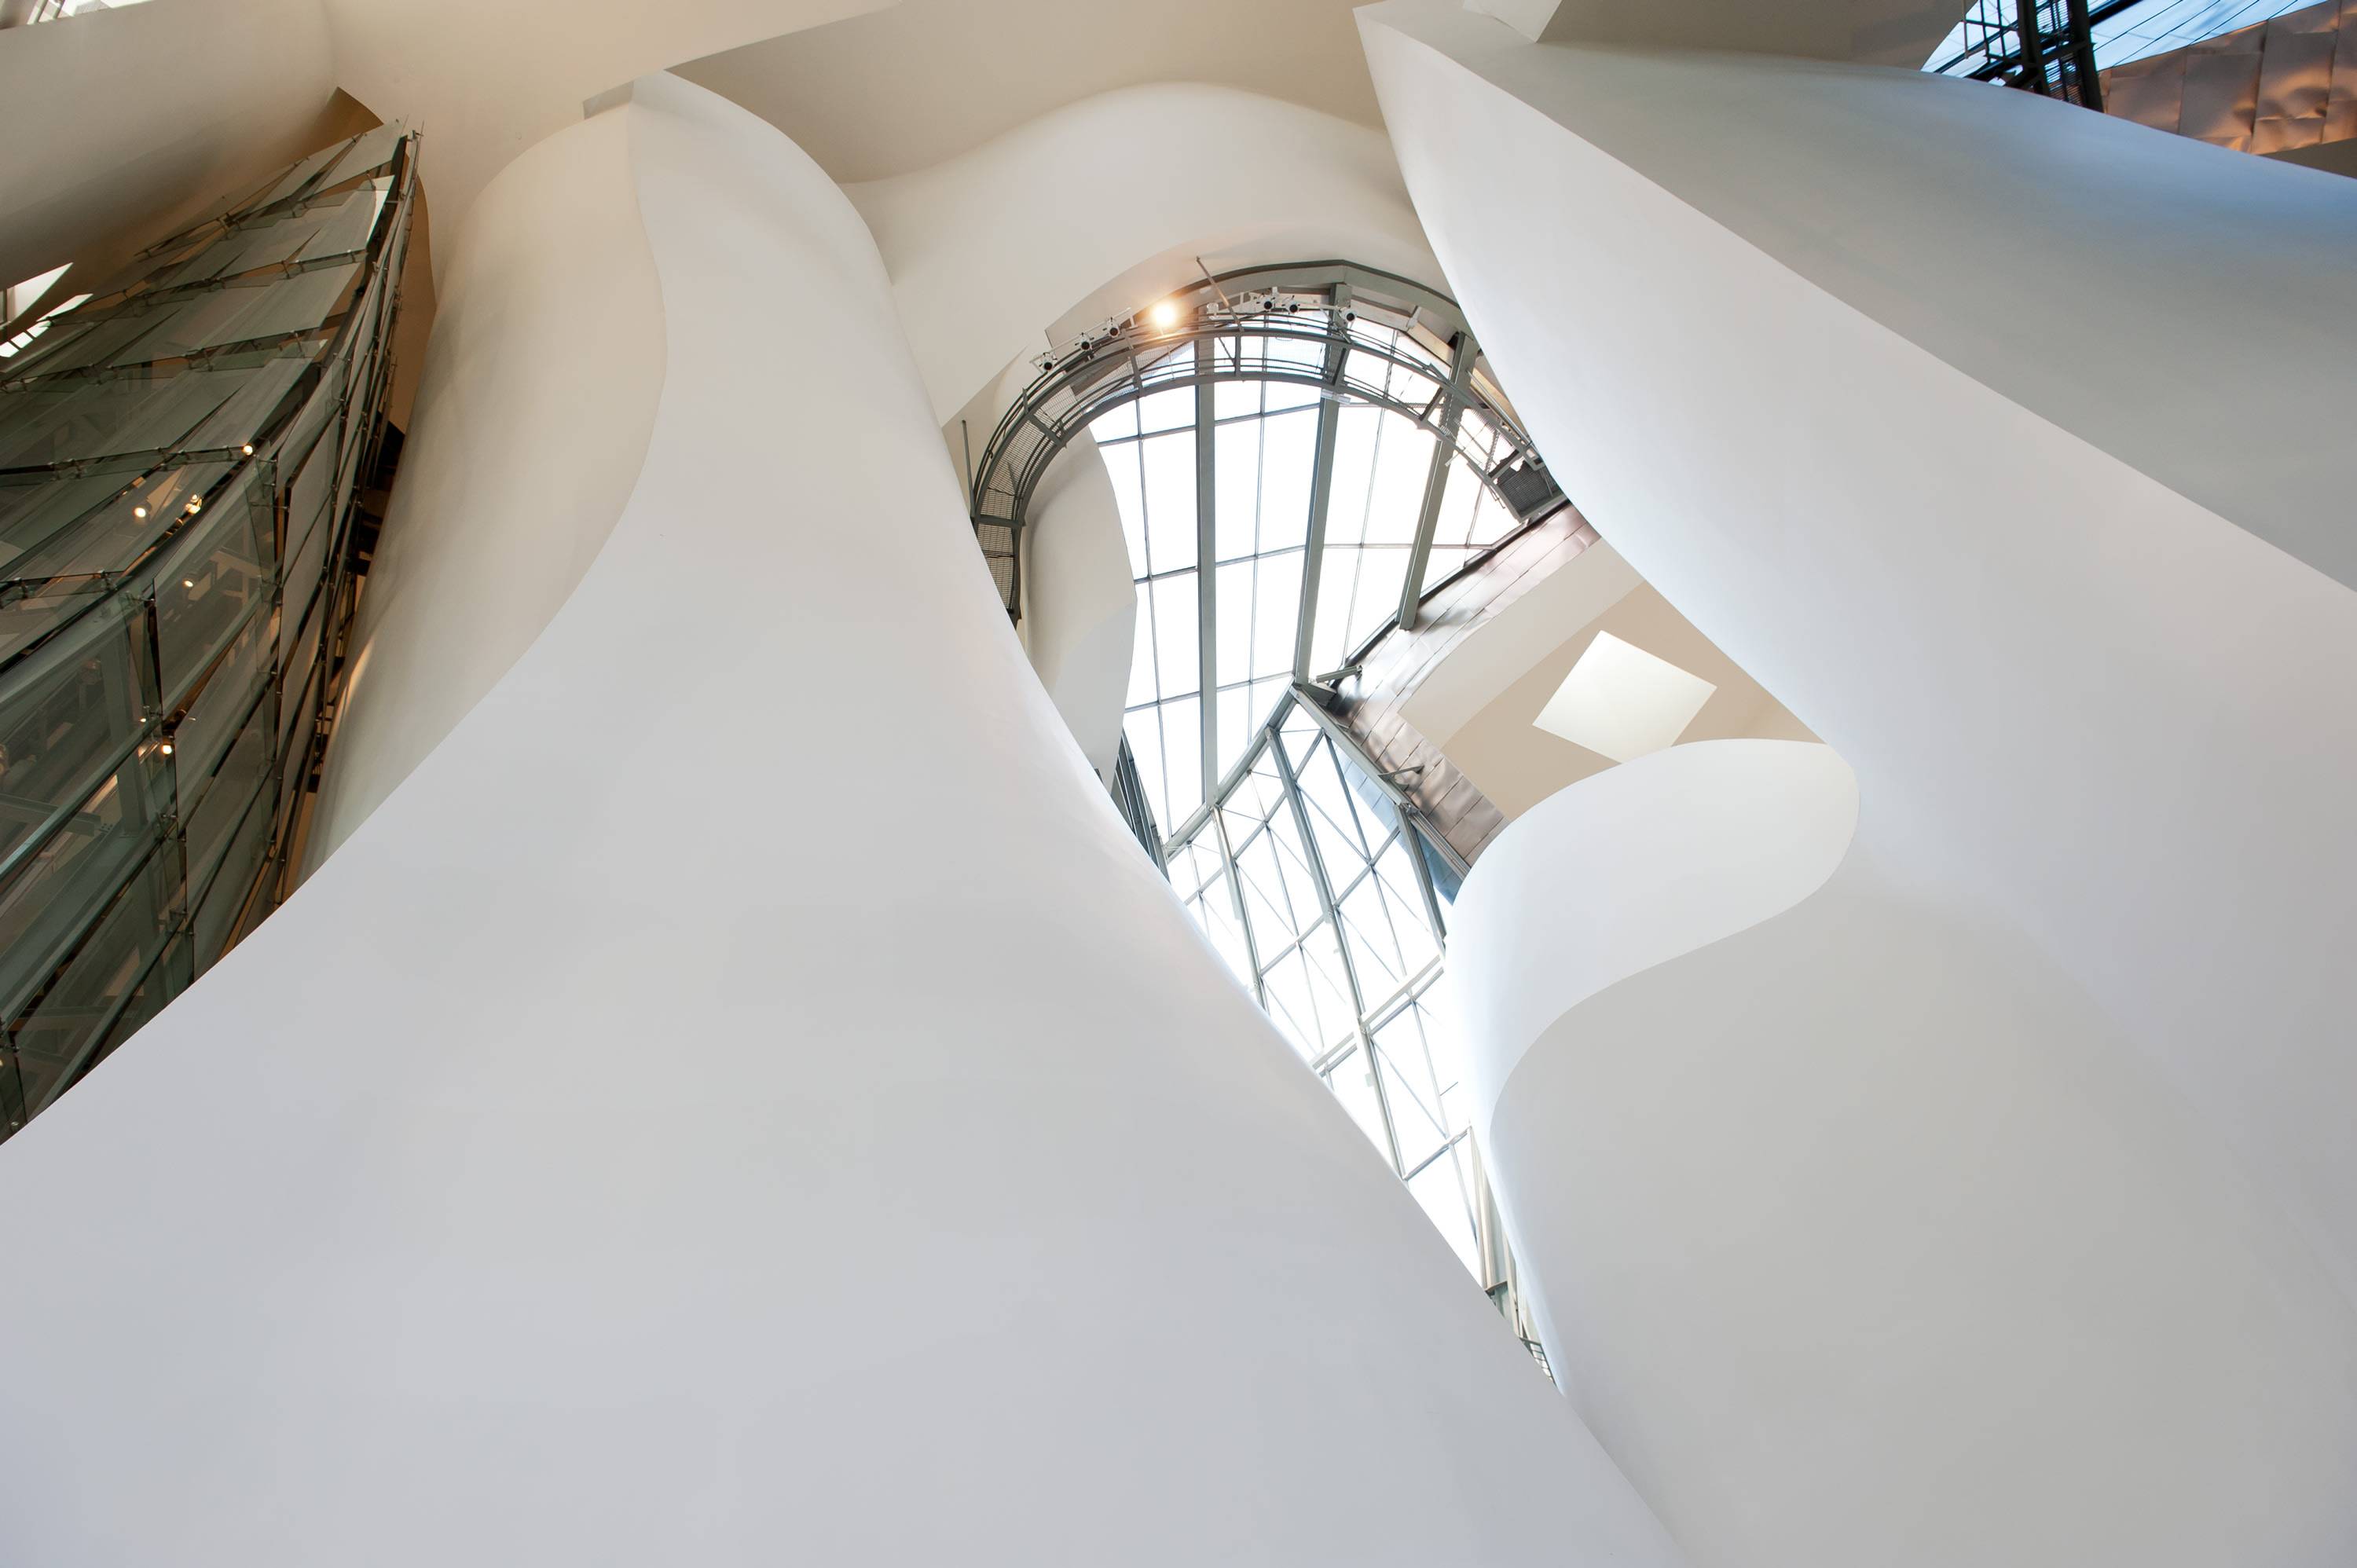 Музей современного искусства гуггенхейма в бильбао (испания) — фото, экспонаты, картины — плейсмент